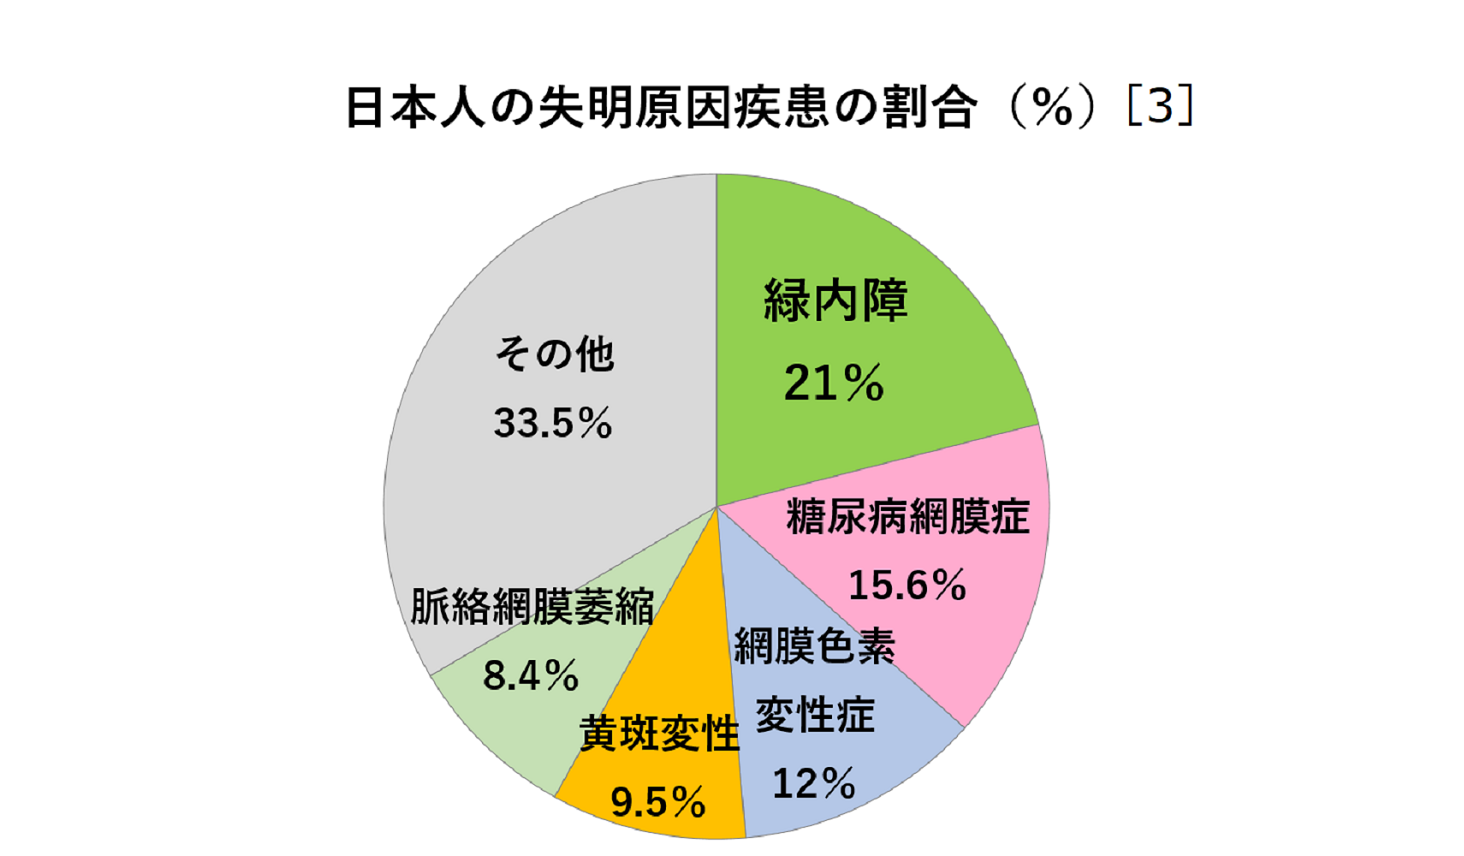 日本の失明原因疾患の割合を示した円グラフ